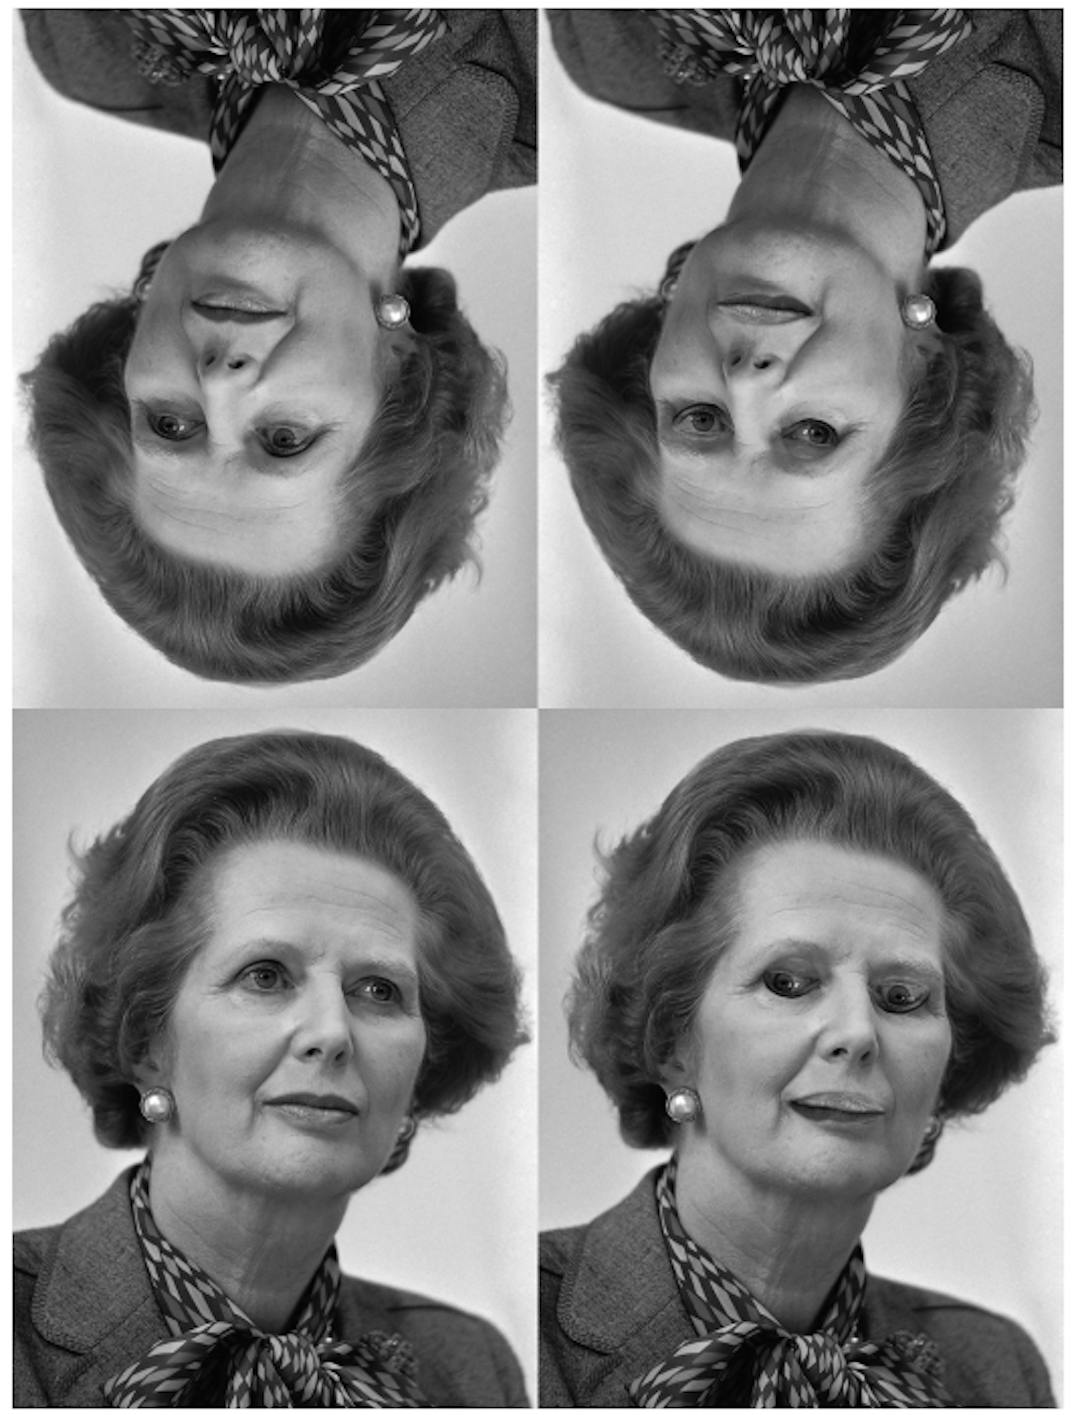 그림 4. Margaret Thatcher 환상 [31]: 위쪽 행의 얼굴은 아래쪽 행의 얼굴이 반전된 버전입니다. 오른쪽 하단의 눈과 입 반전은 얼굴을 똑바로 세울 때 뚜렷하게 나타나지만 거꾸로 하면 그렇지 않습니다. (제공: Rob Bogaerts/Anefo https://commons.wikimedia.org/w/index.php? curid=79649613))